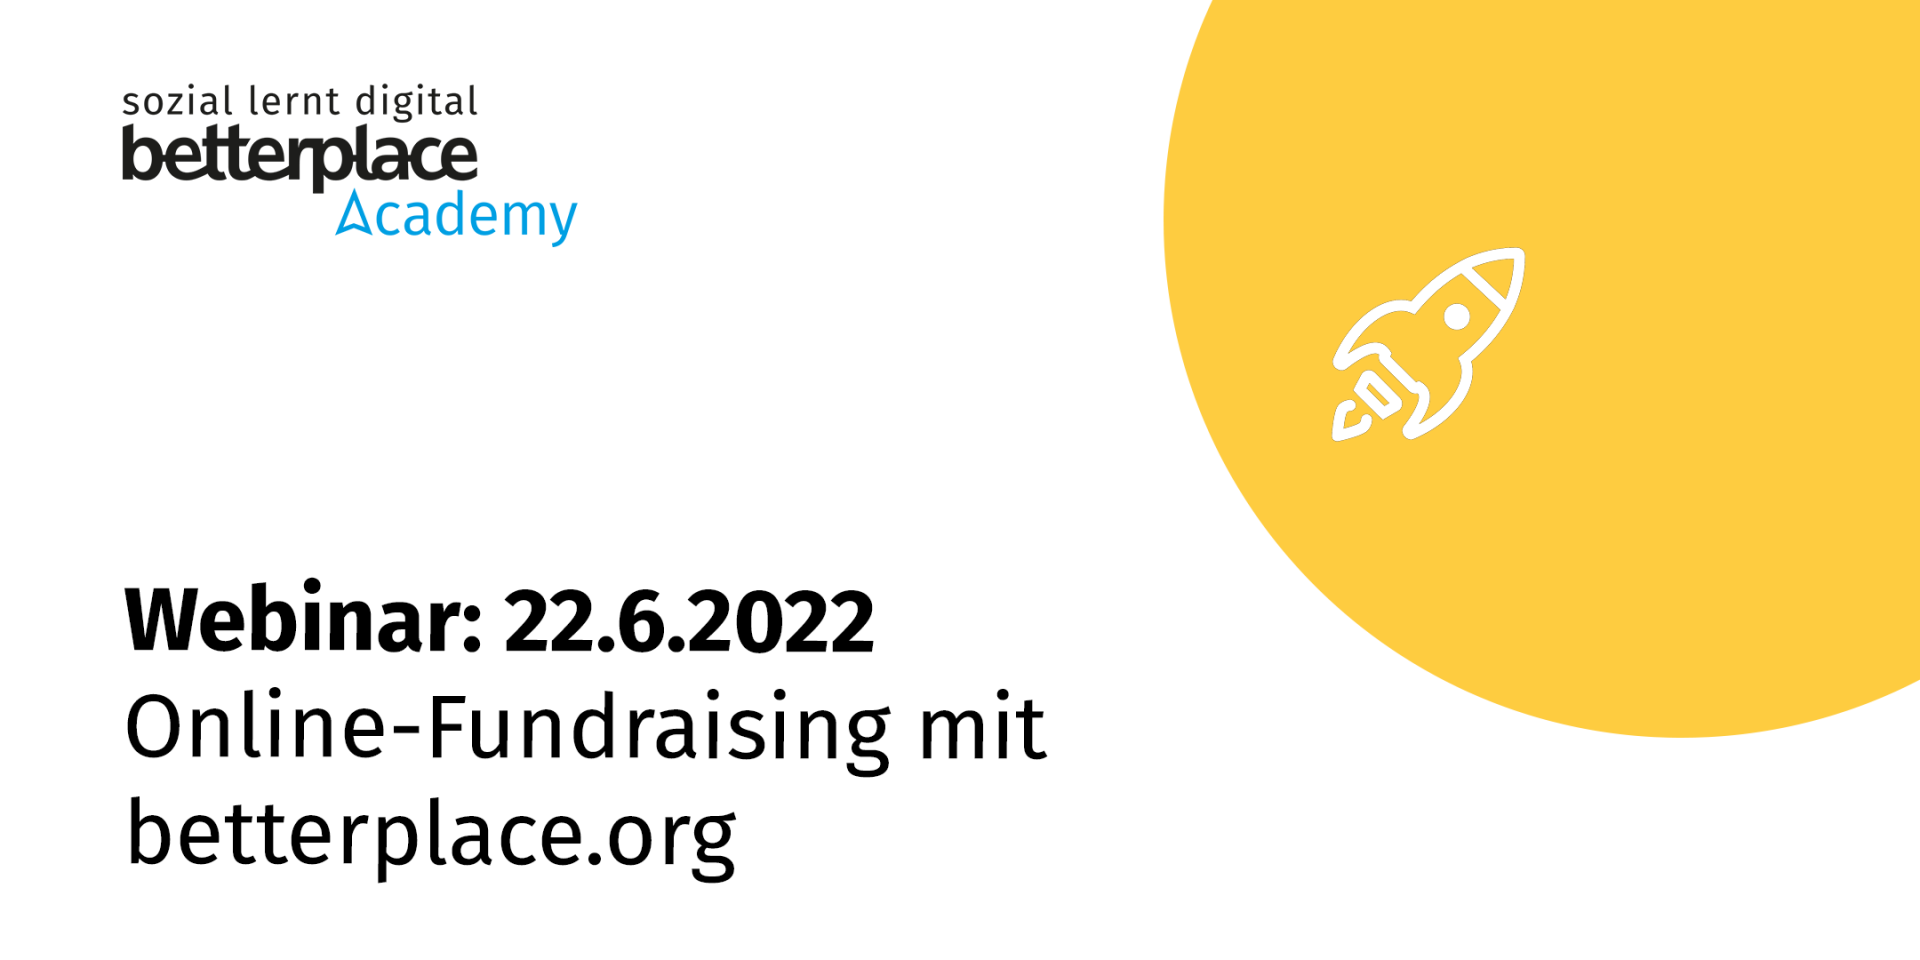 Gelber Planet und weiße Raket mit Logo der betterplace academy sowie Text: Webinar am 22.6.2022: Online-Fundraising mit betterplace.org